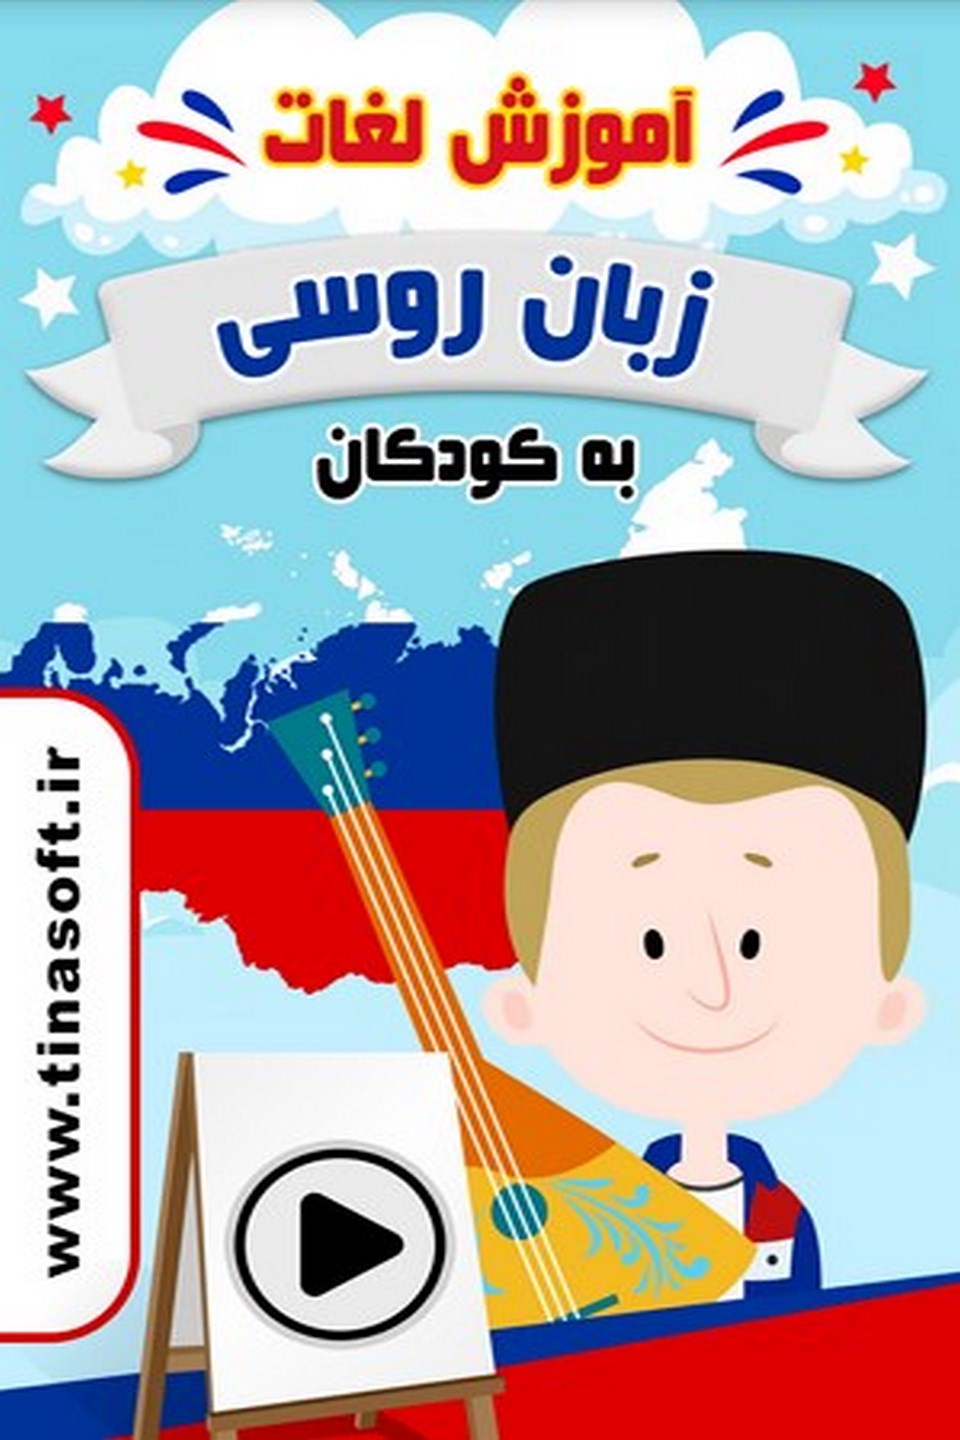 آموزش لغات زبان روسی به کودکان